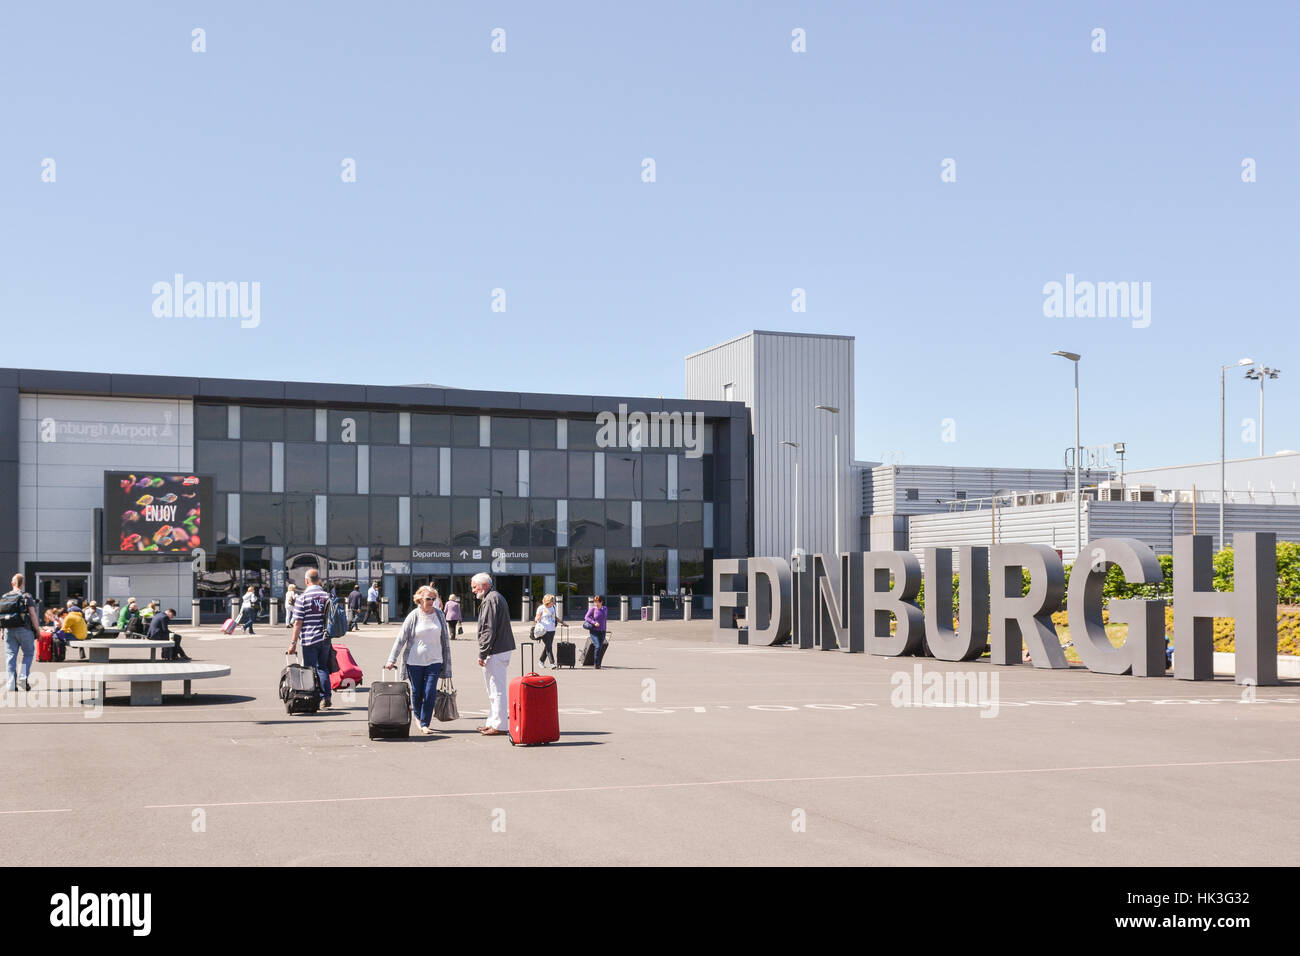 El aeropuerto de Edimburgo, Edimburgo, Escocia, Reino Unido Foto de stock